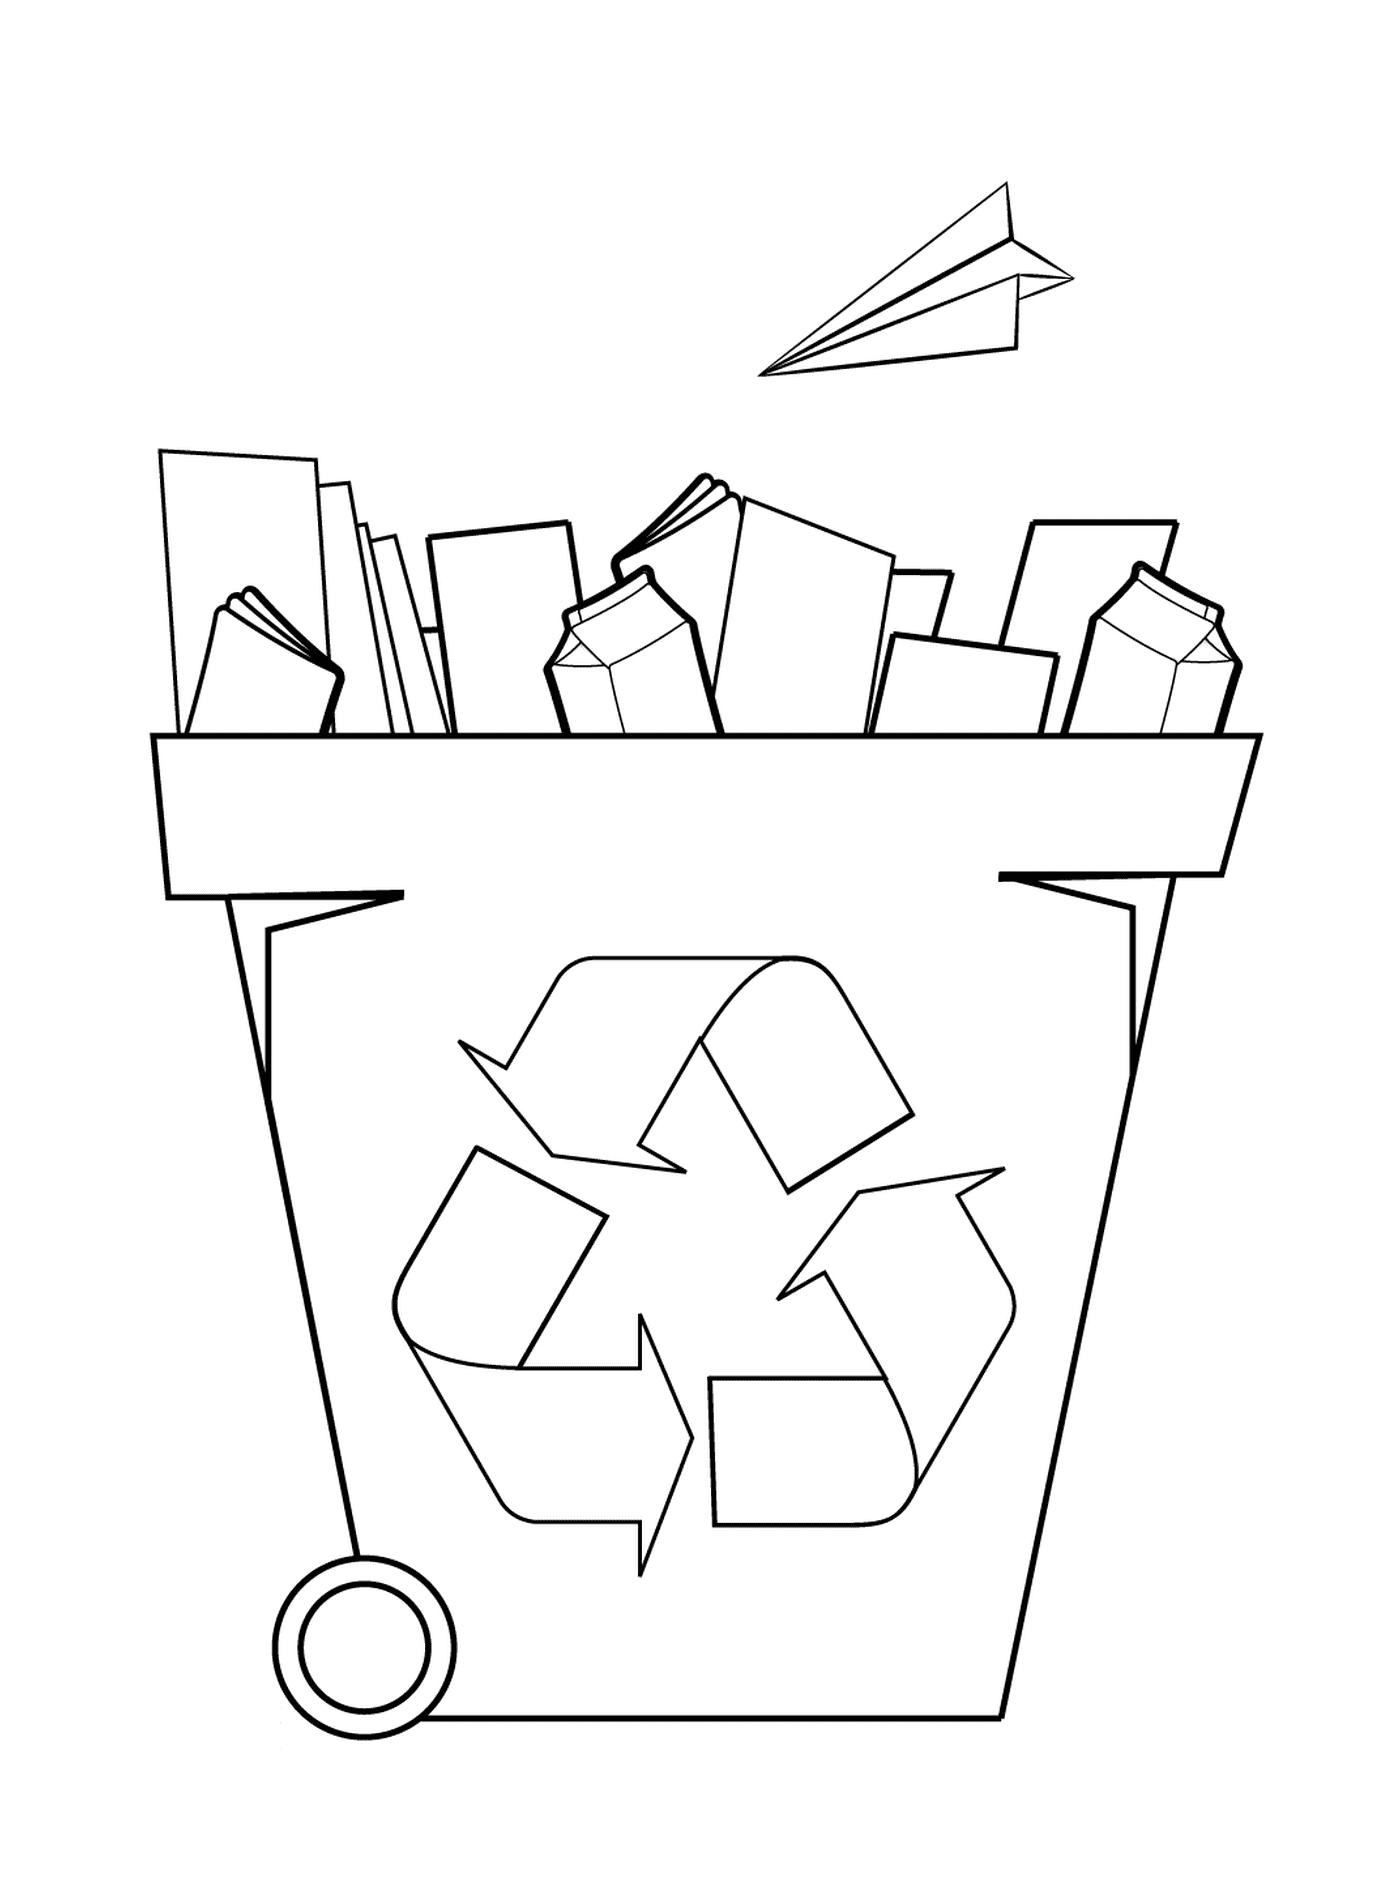  Depósito de reciclaje, clasificación de papel 